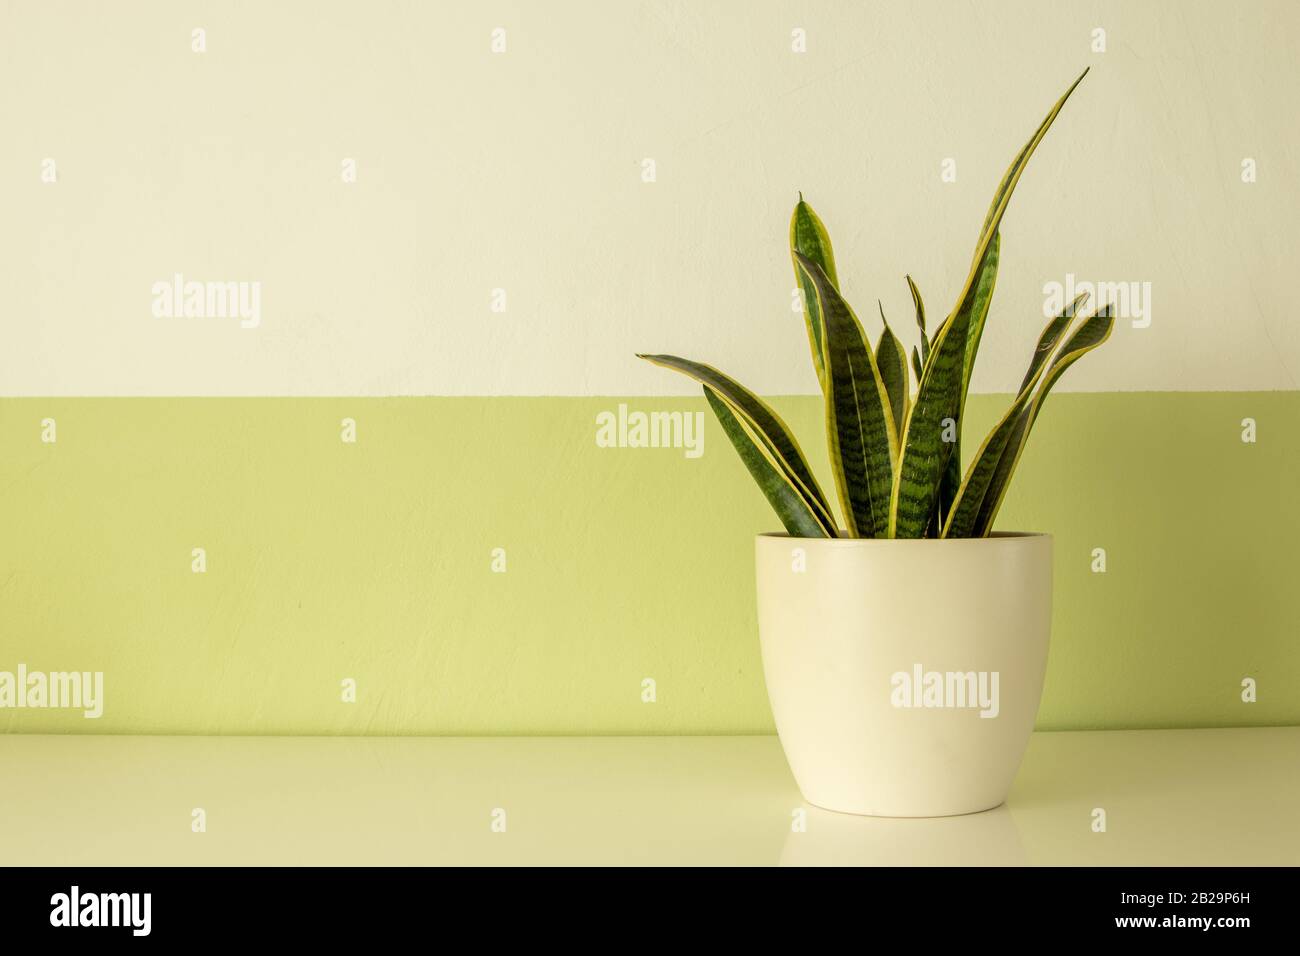 pianta in vaso su una tavola bianca, parete bianca e verde come sfondo Foto Stock